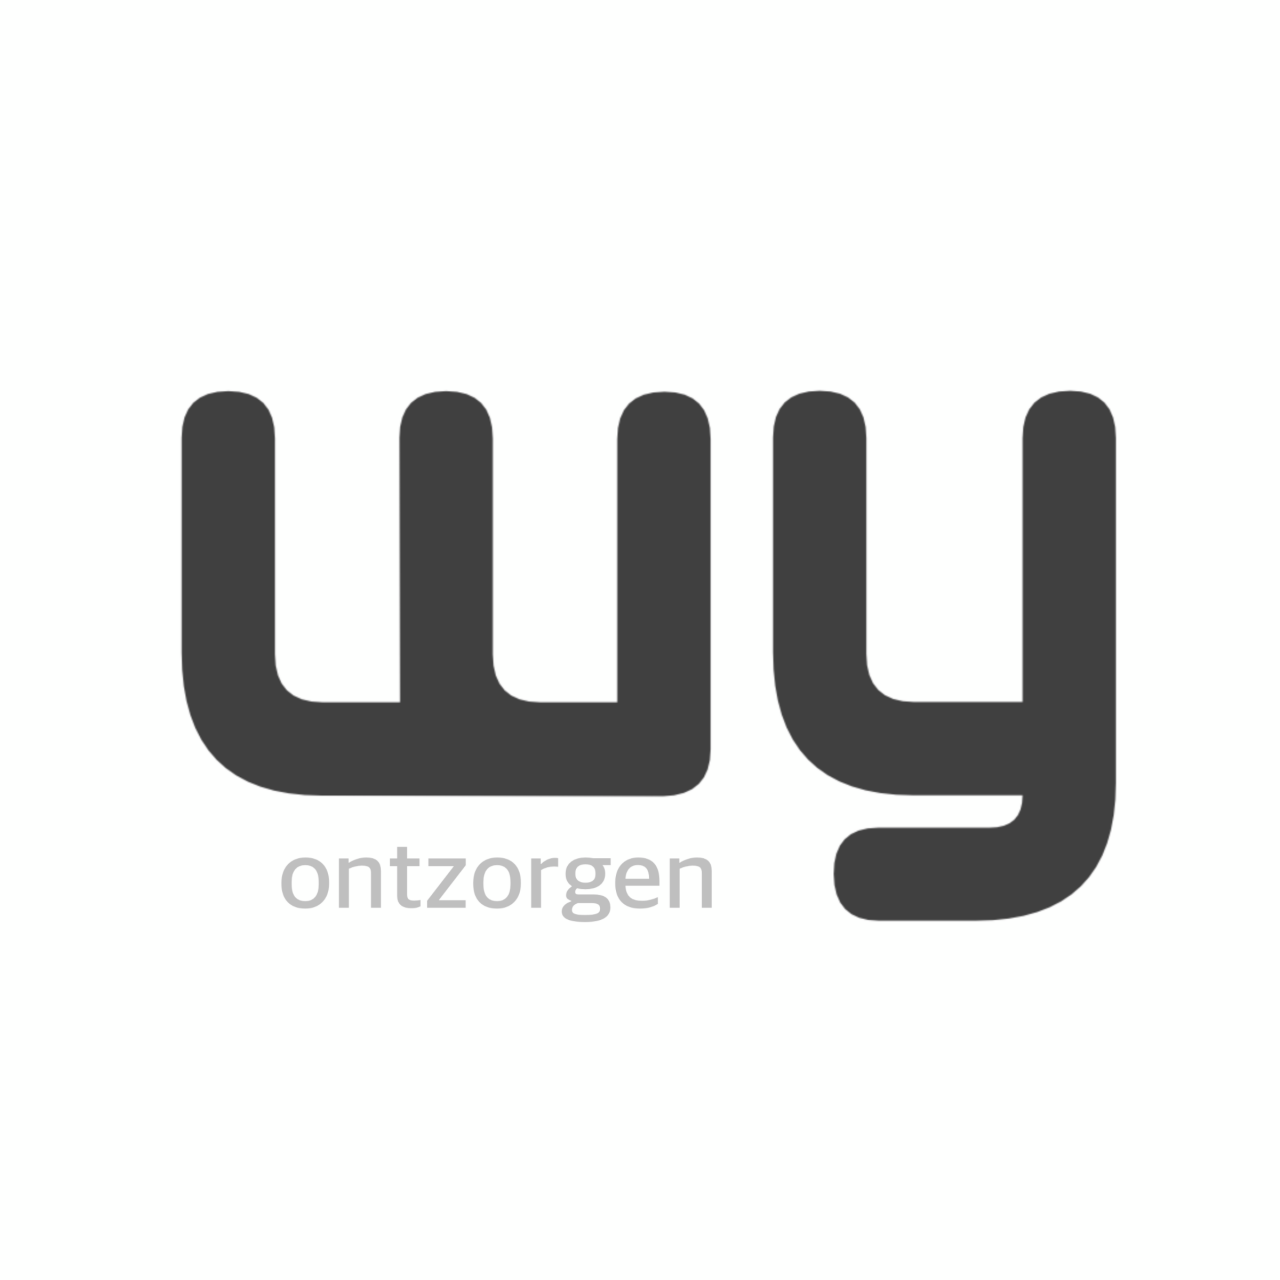 Logo WY ontzorgen | alles voor events!